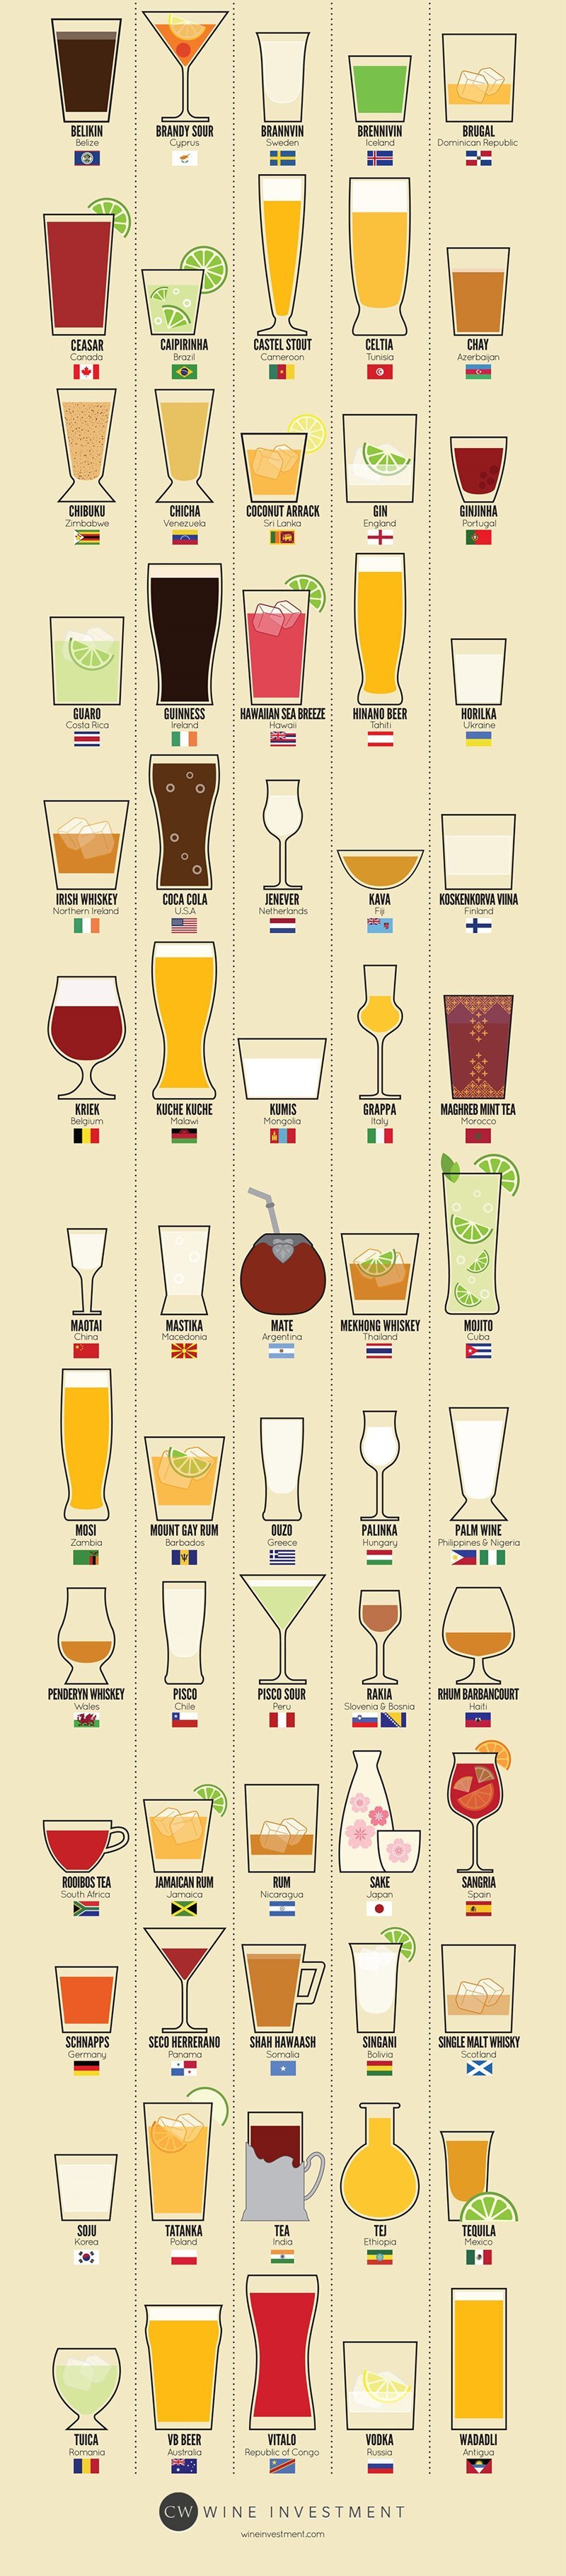 80 национальных напитков со всего мира